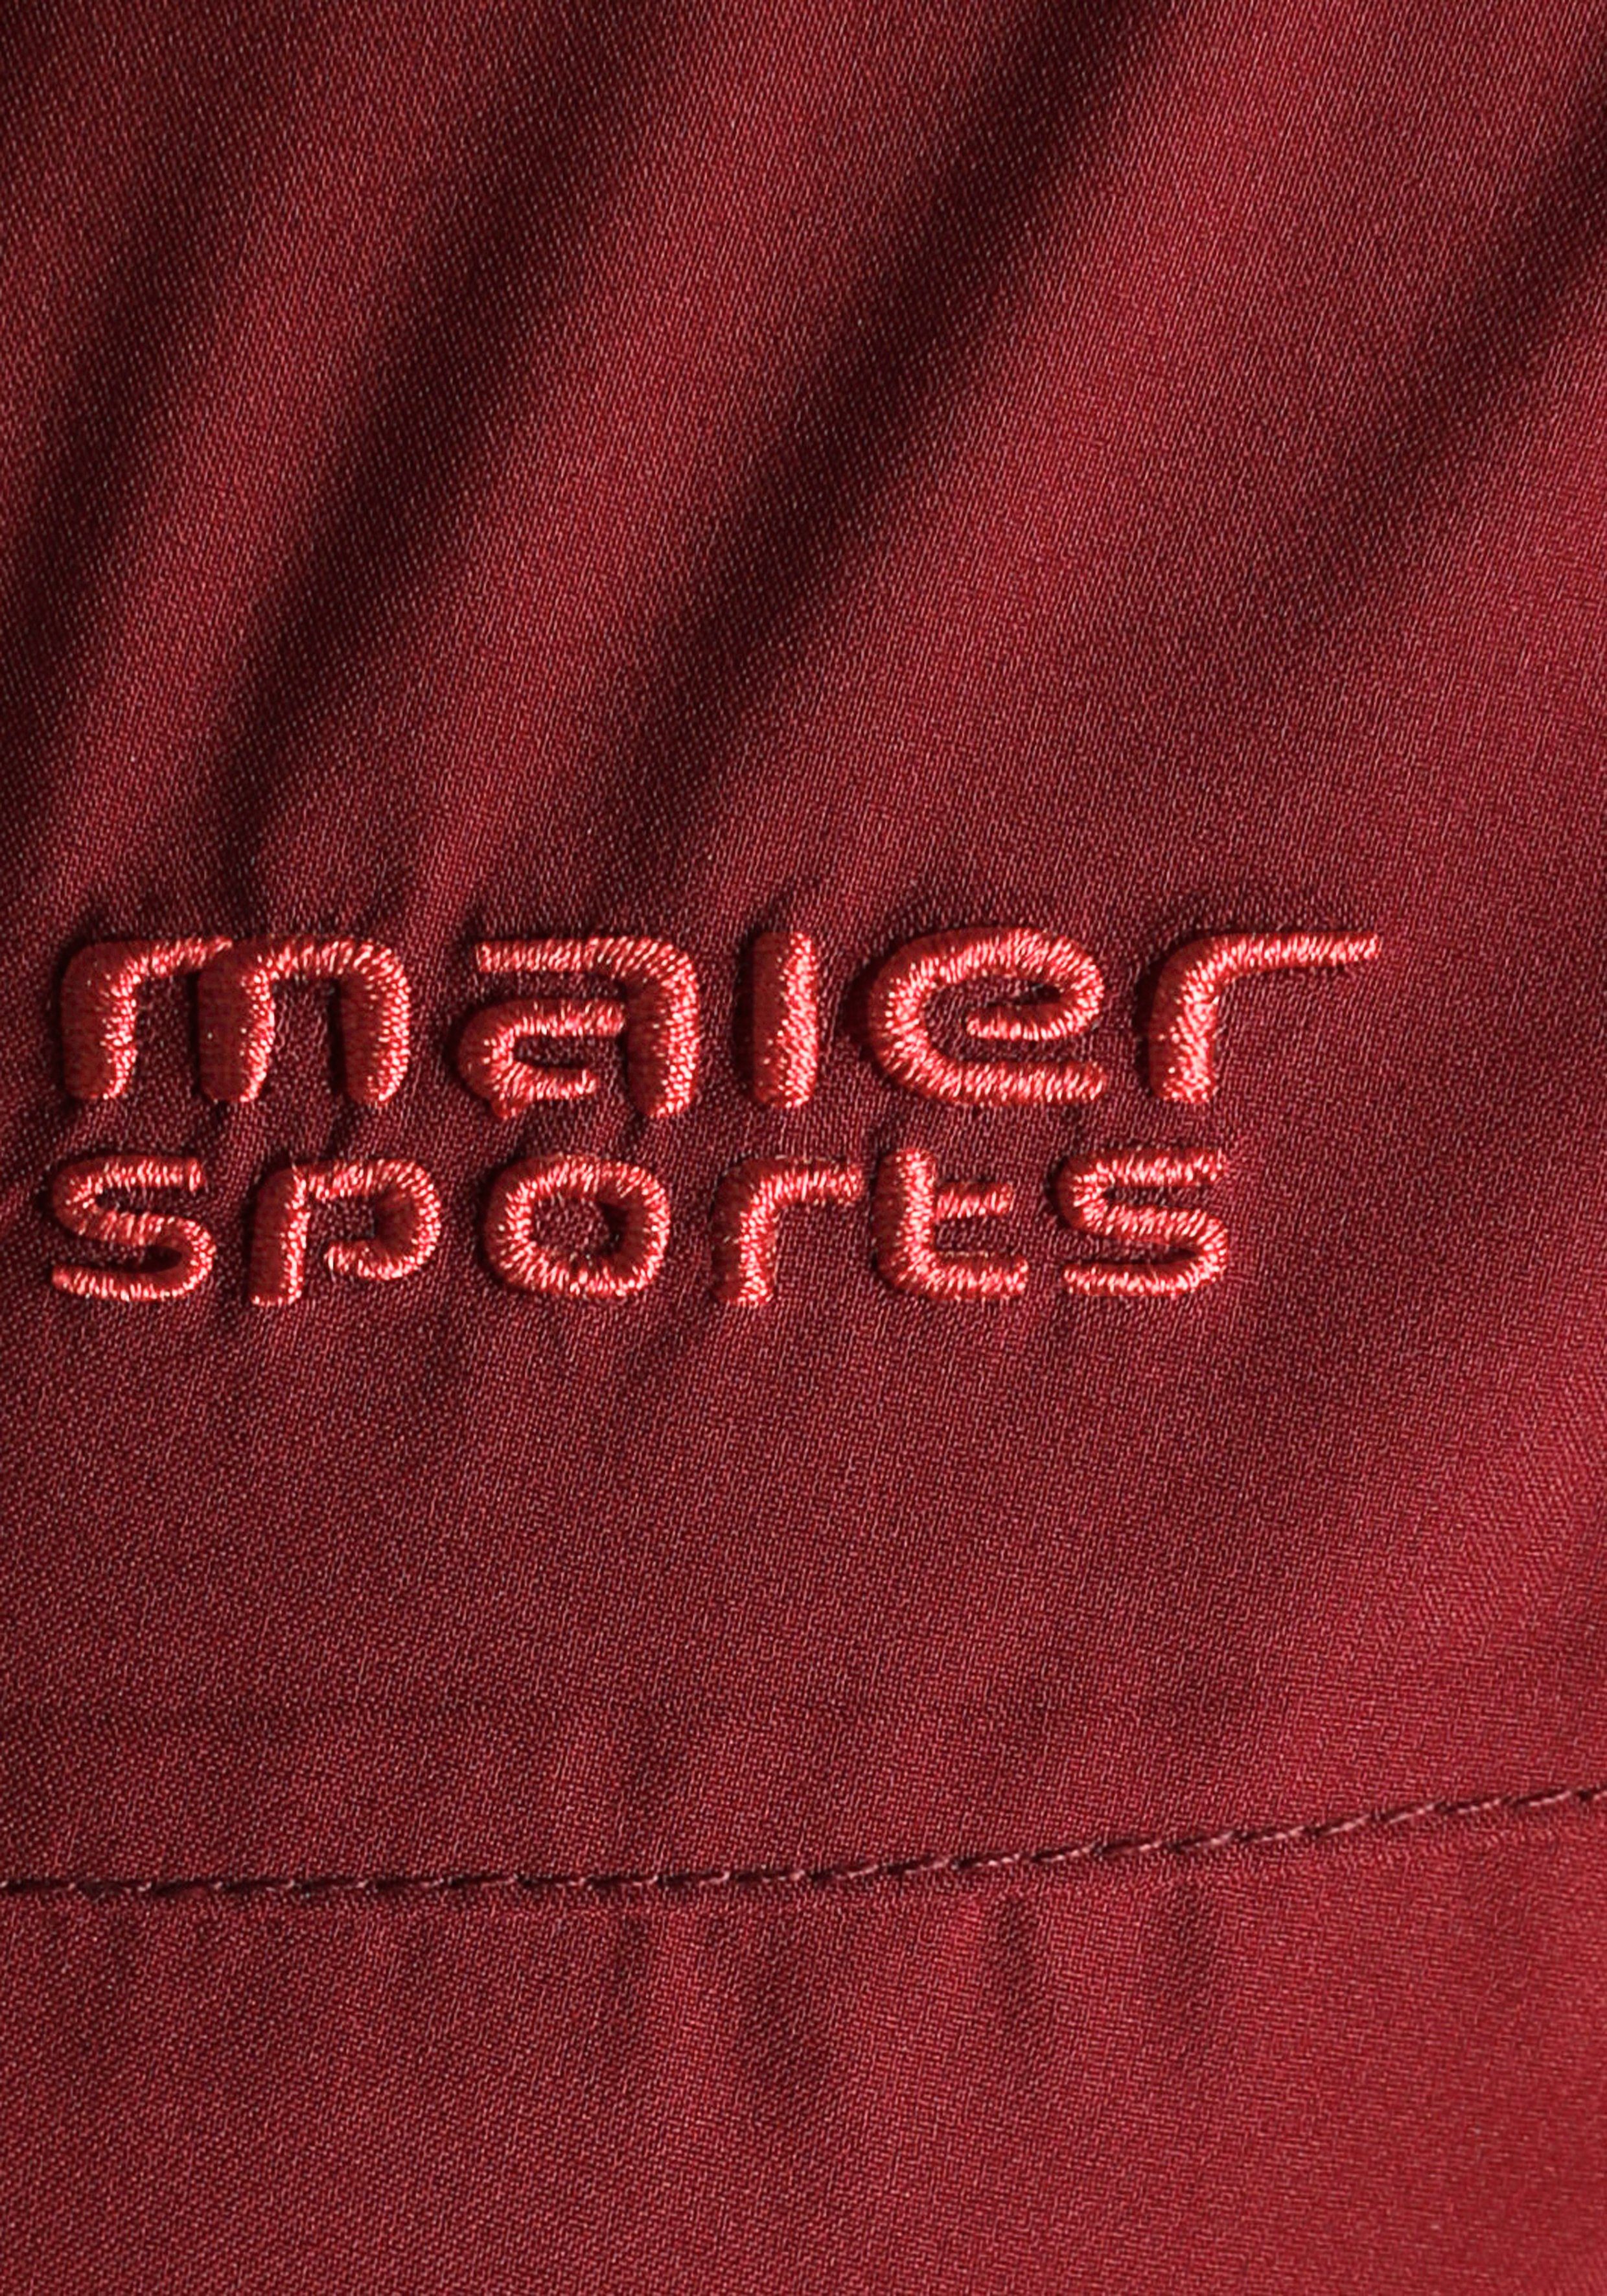 Übergangsjacke, in erhältlich Größen auch Maier großen Sports Wasserdichte Outdoorjacke rost-rot